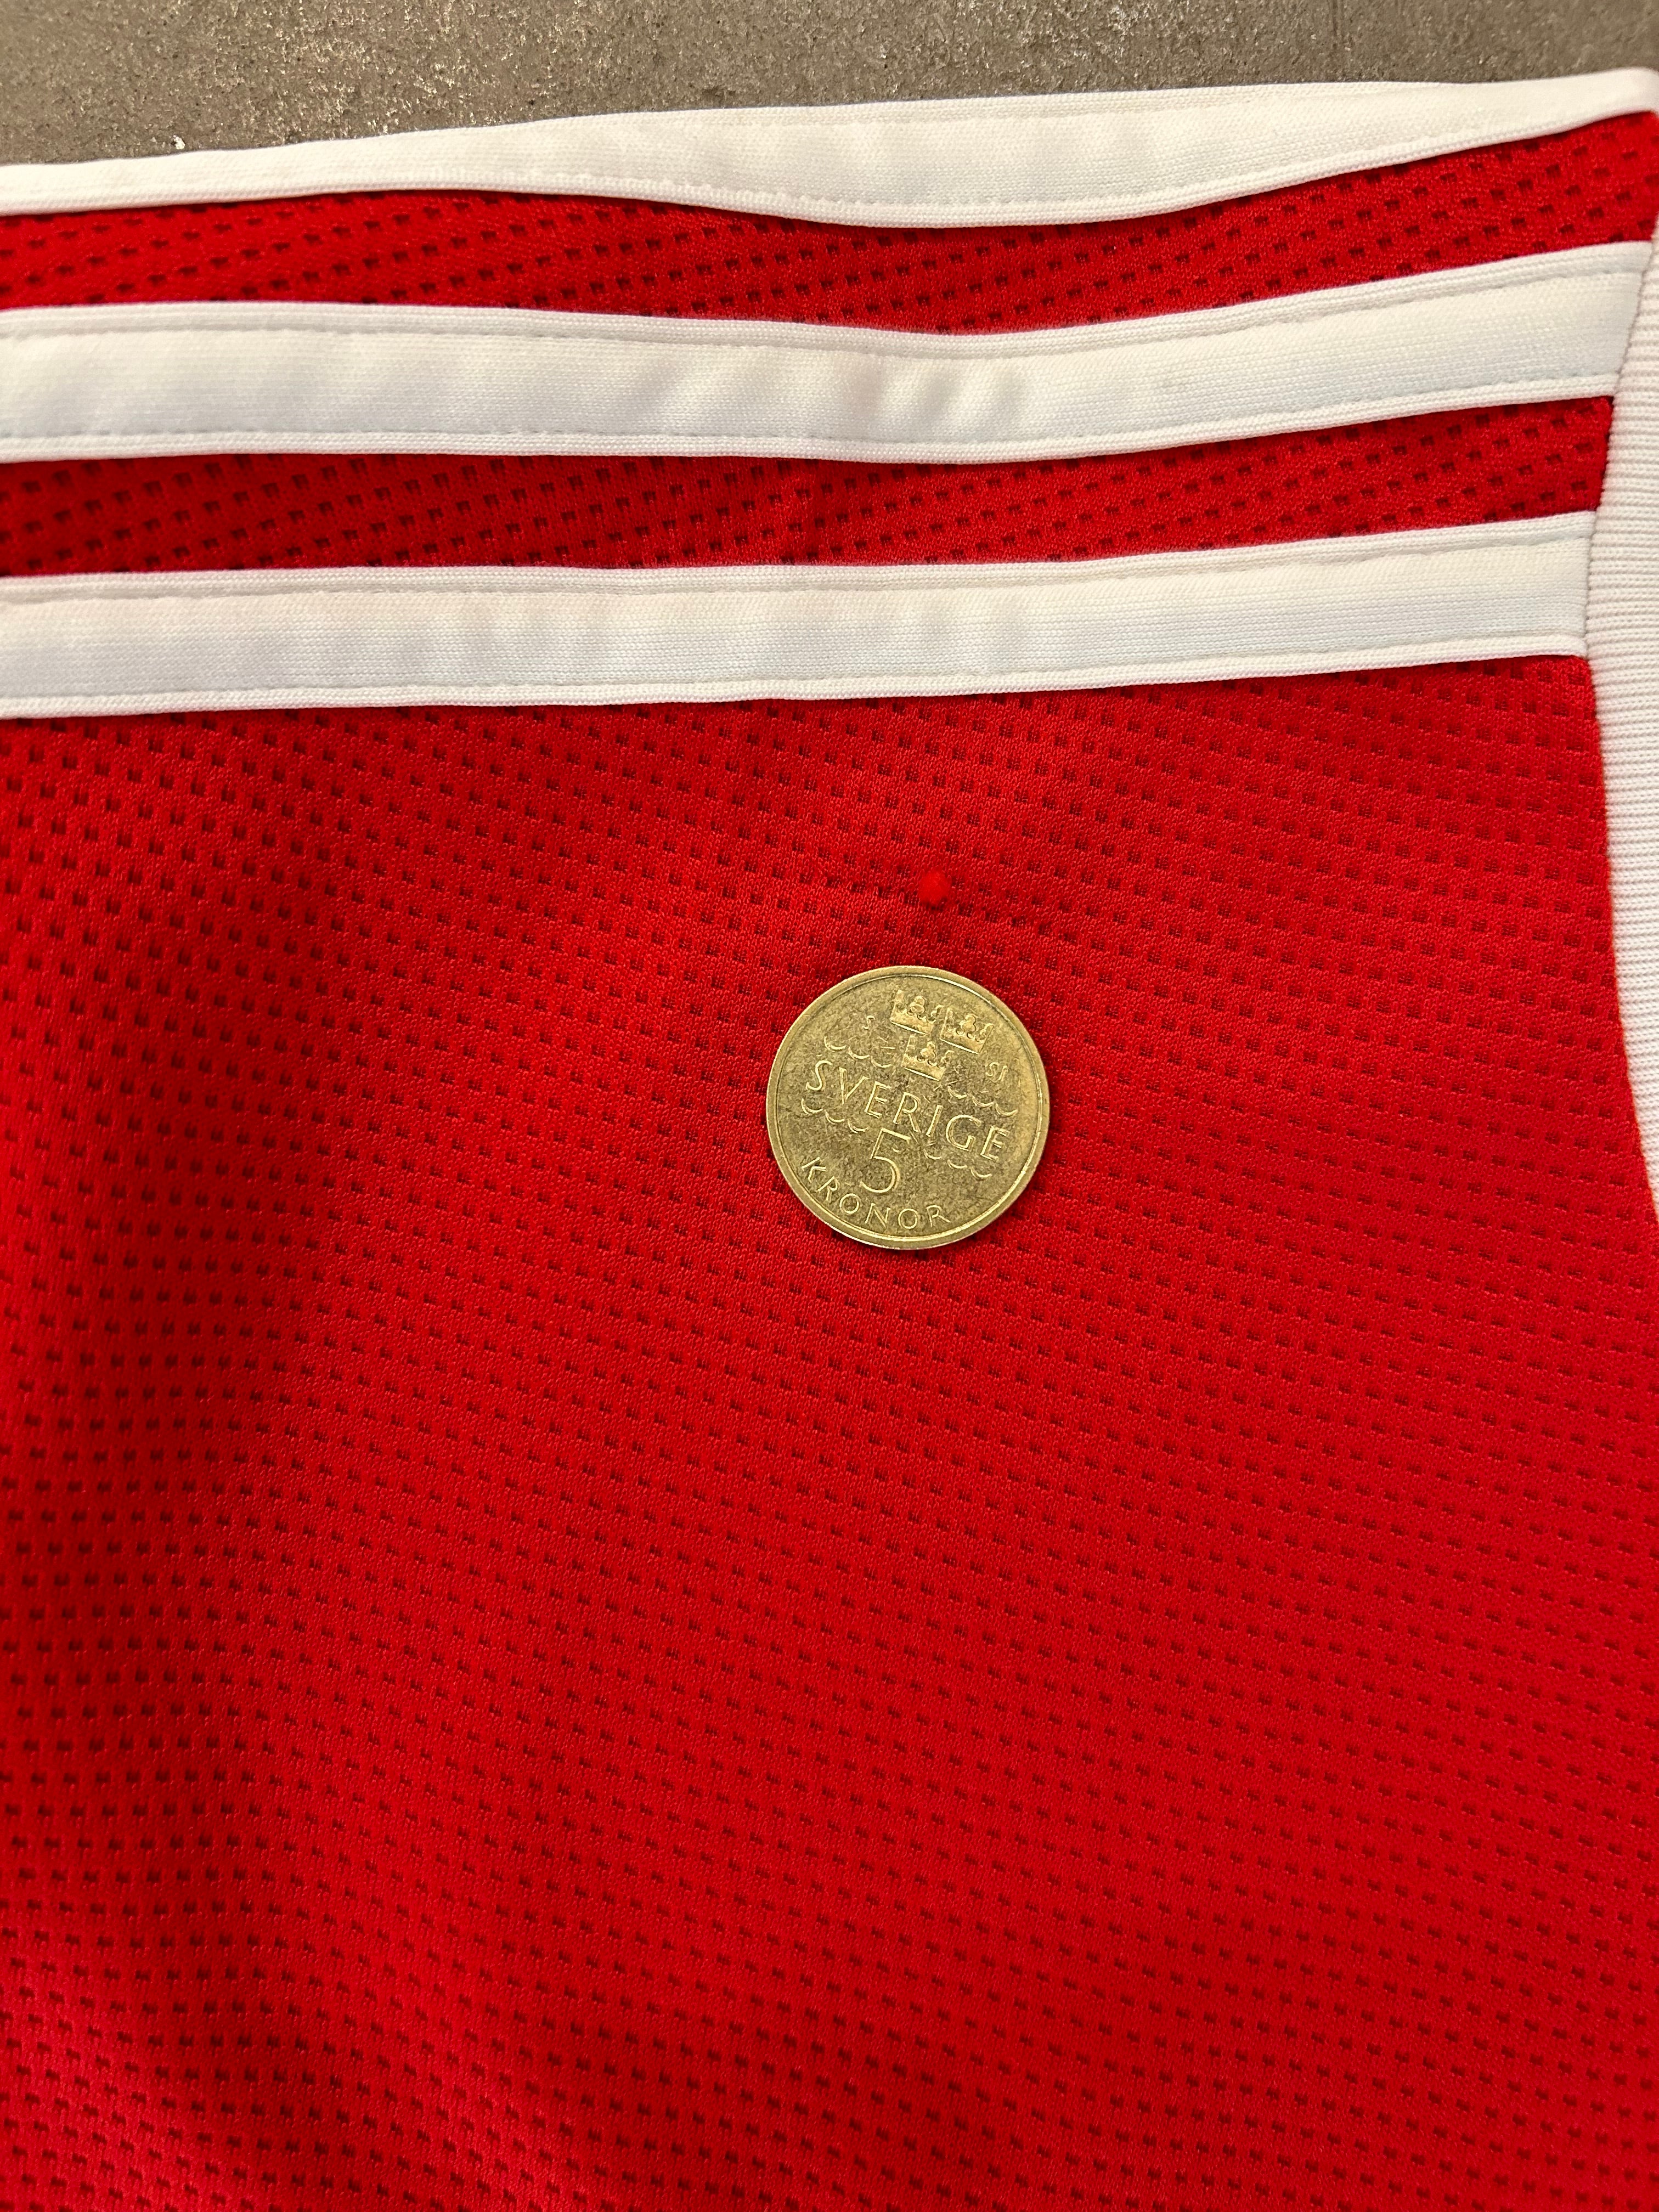 Adidas - Manchester United 2021/22 Home Football Shirt 'RONALDO'